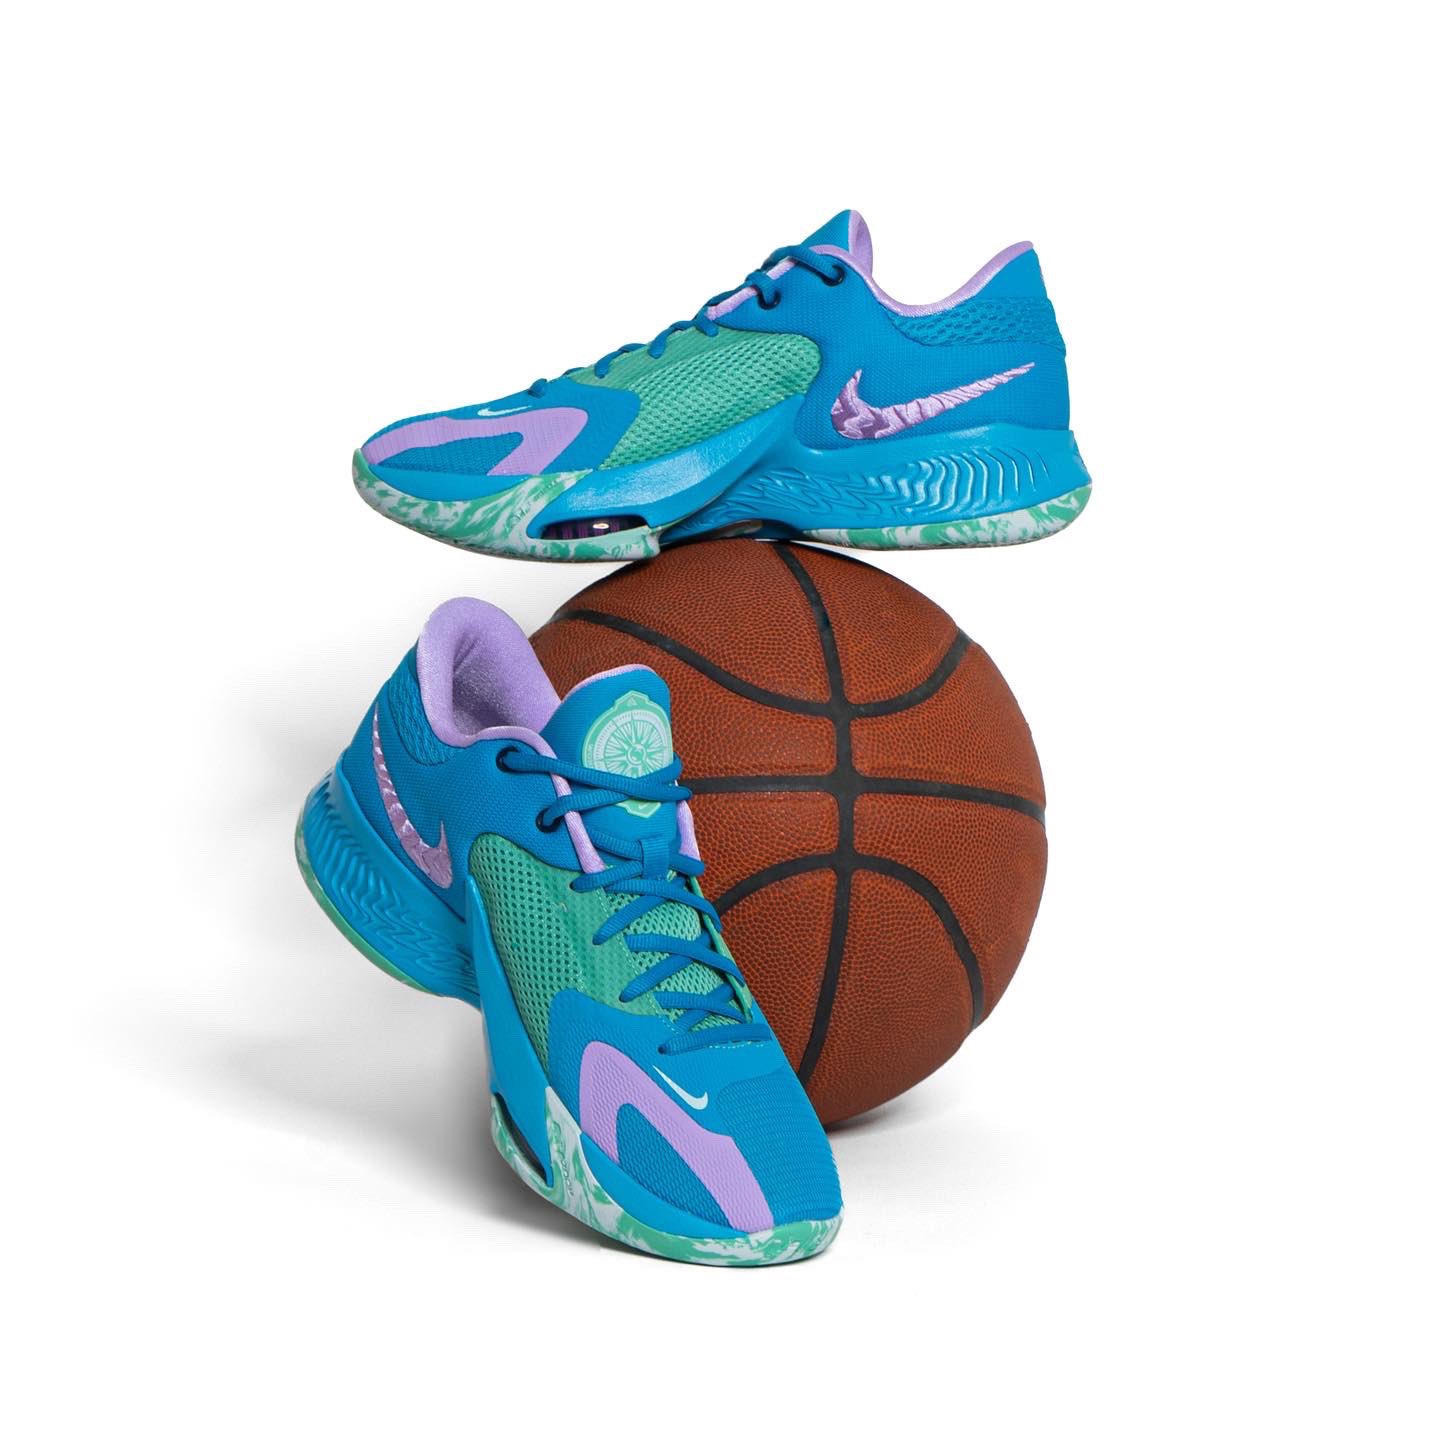 Alboroto carpeta Abstracción Basket Country on Twitter: "Giannis vuelve a la carga con sus Zoom Freak 4  Laser Blue. Diseñadas para aguantar los 4 cuartos al nivel de la bestia  griega. 🏛️🏀🔥 #ZoomFreak4 #BasketCountry #LaserBlue #